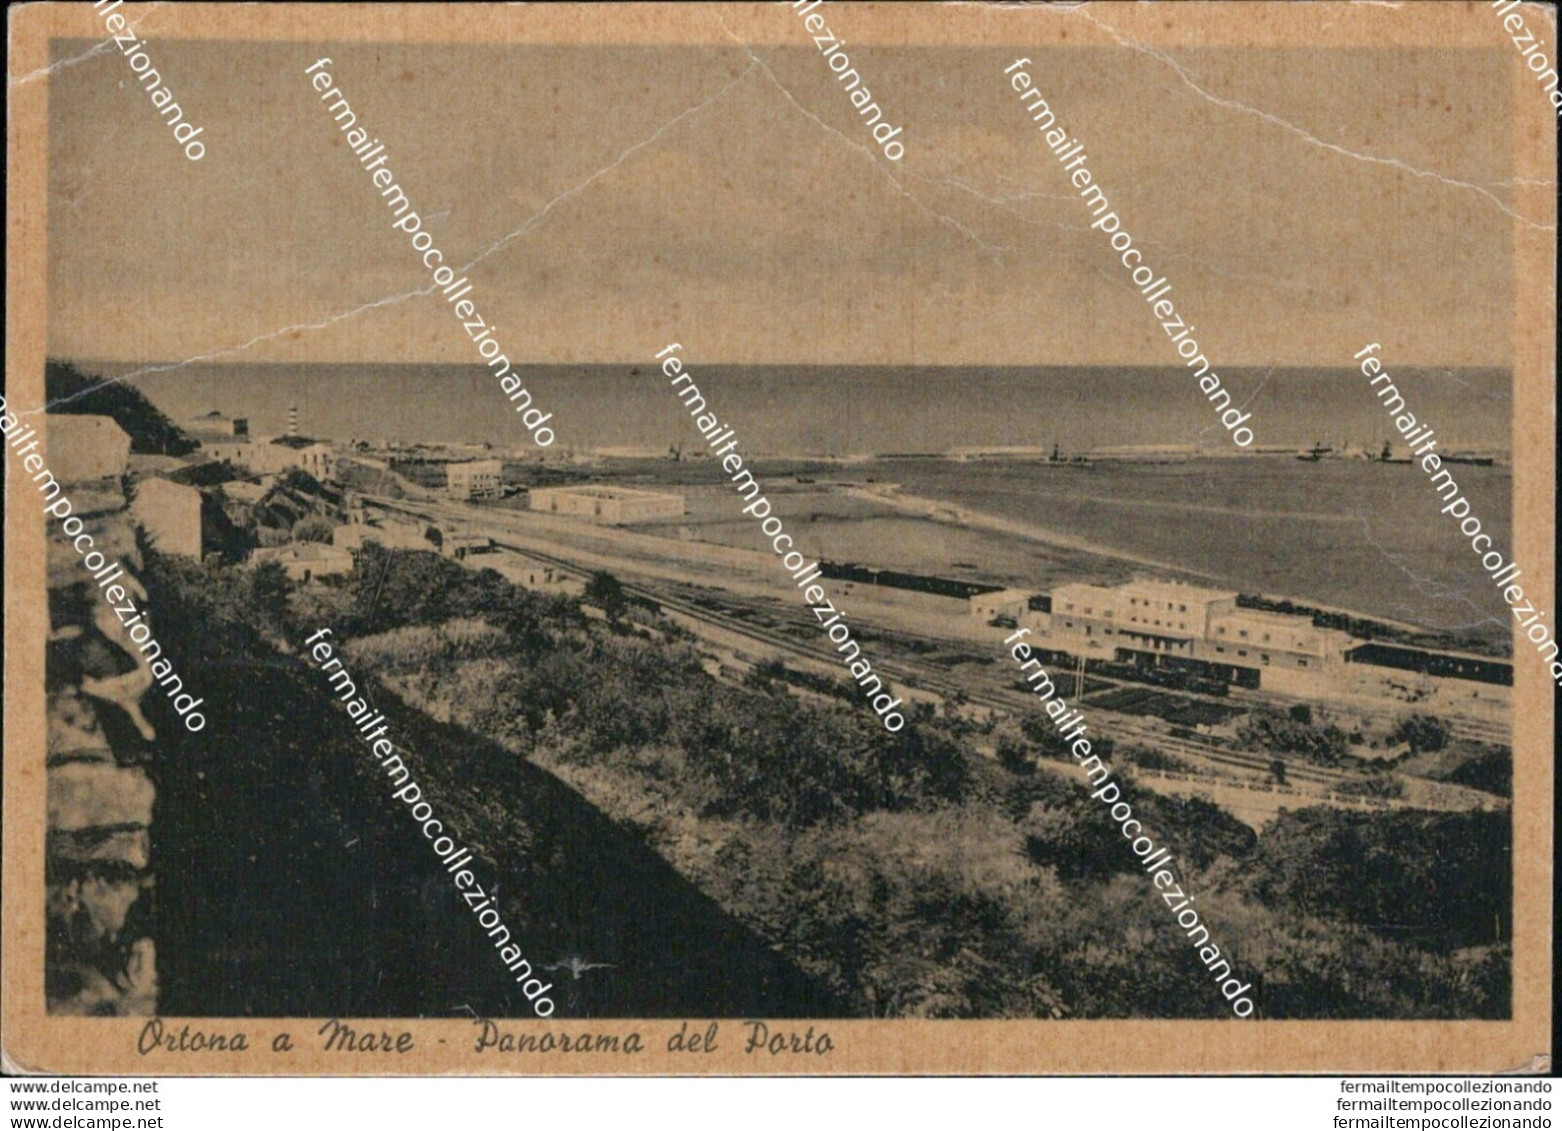 At492 Cartolina  Ortona A Mare Panorama Del Porto Piega Provincia Di Chieti - Chieti